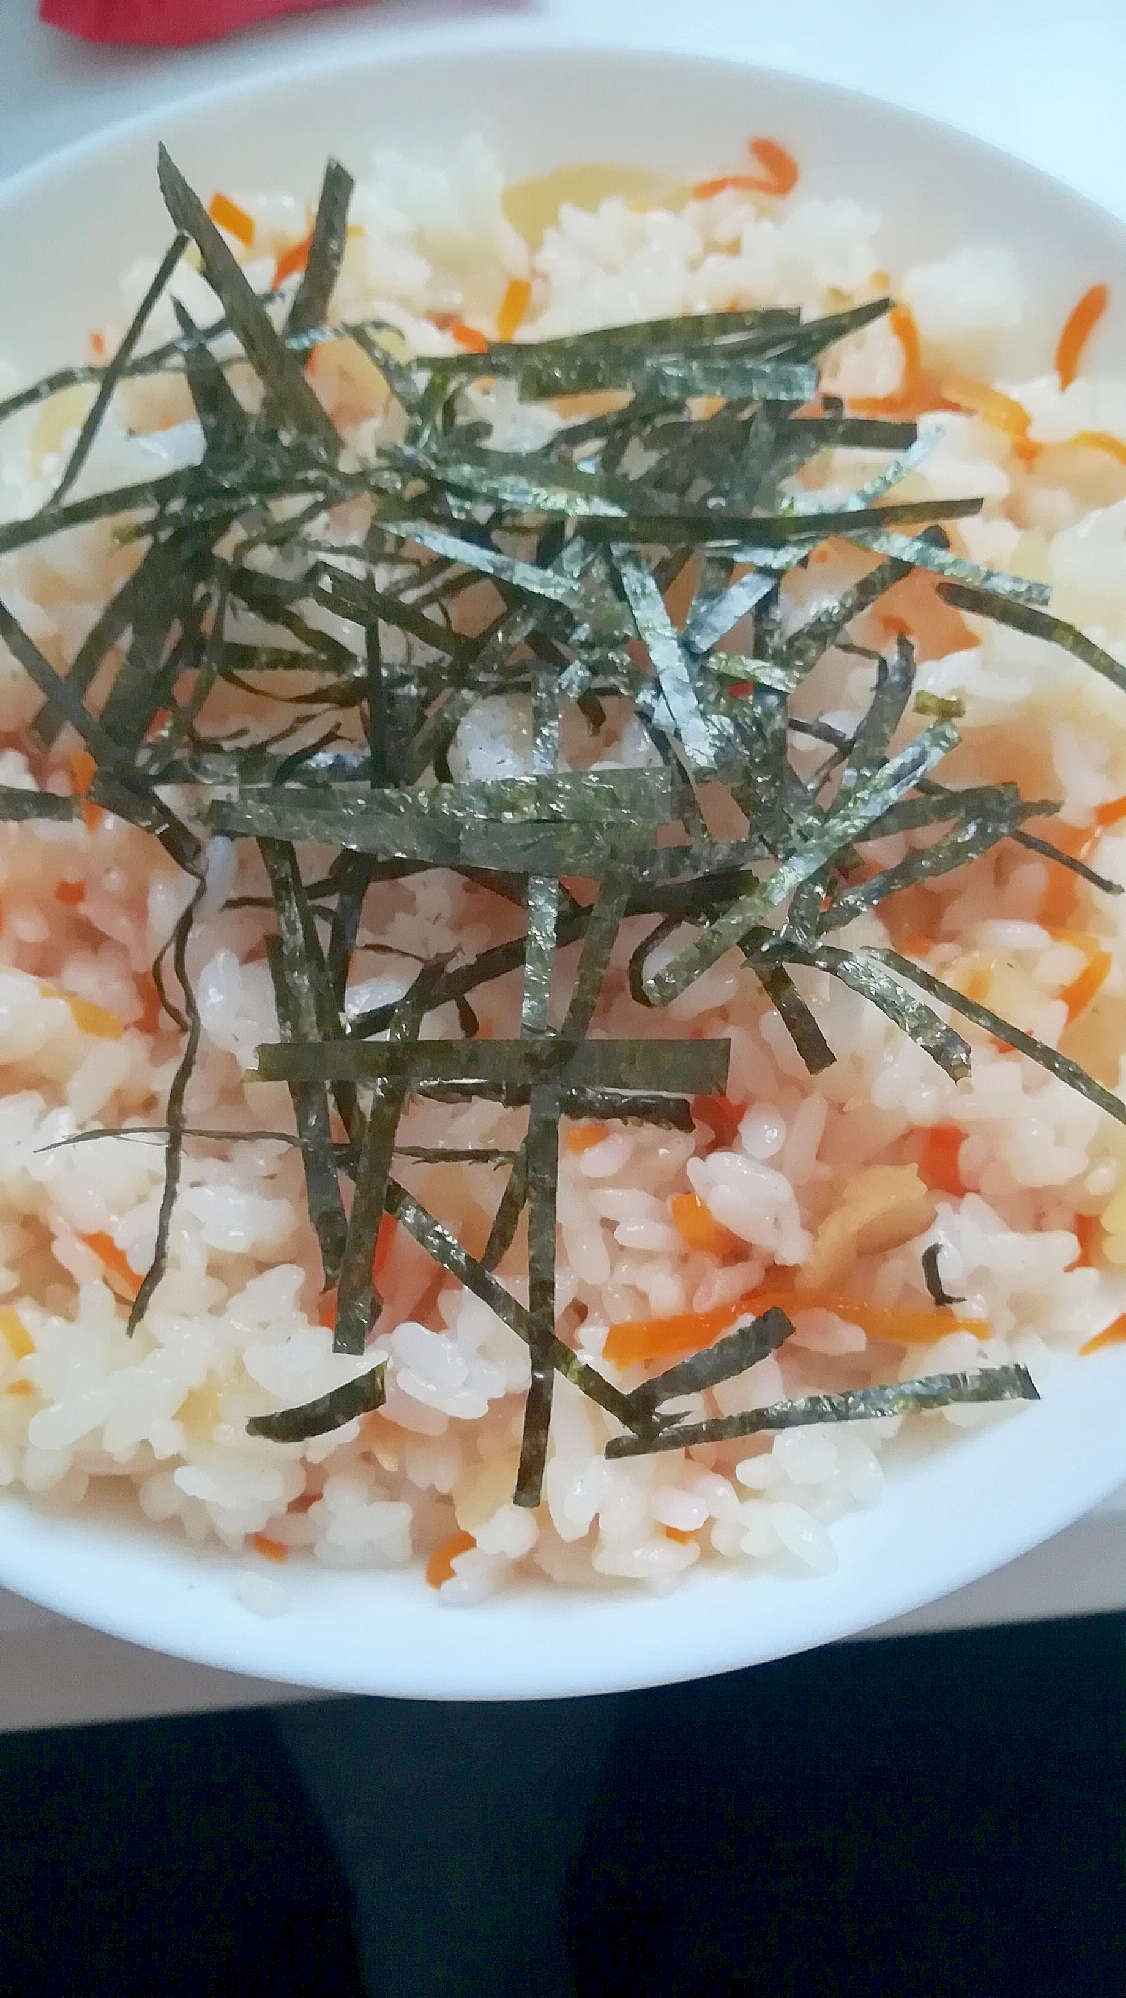 ずぼらレシピ★焼き海苔たっぷり★五目寿司